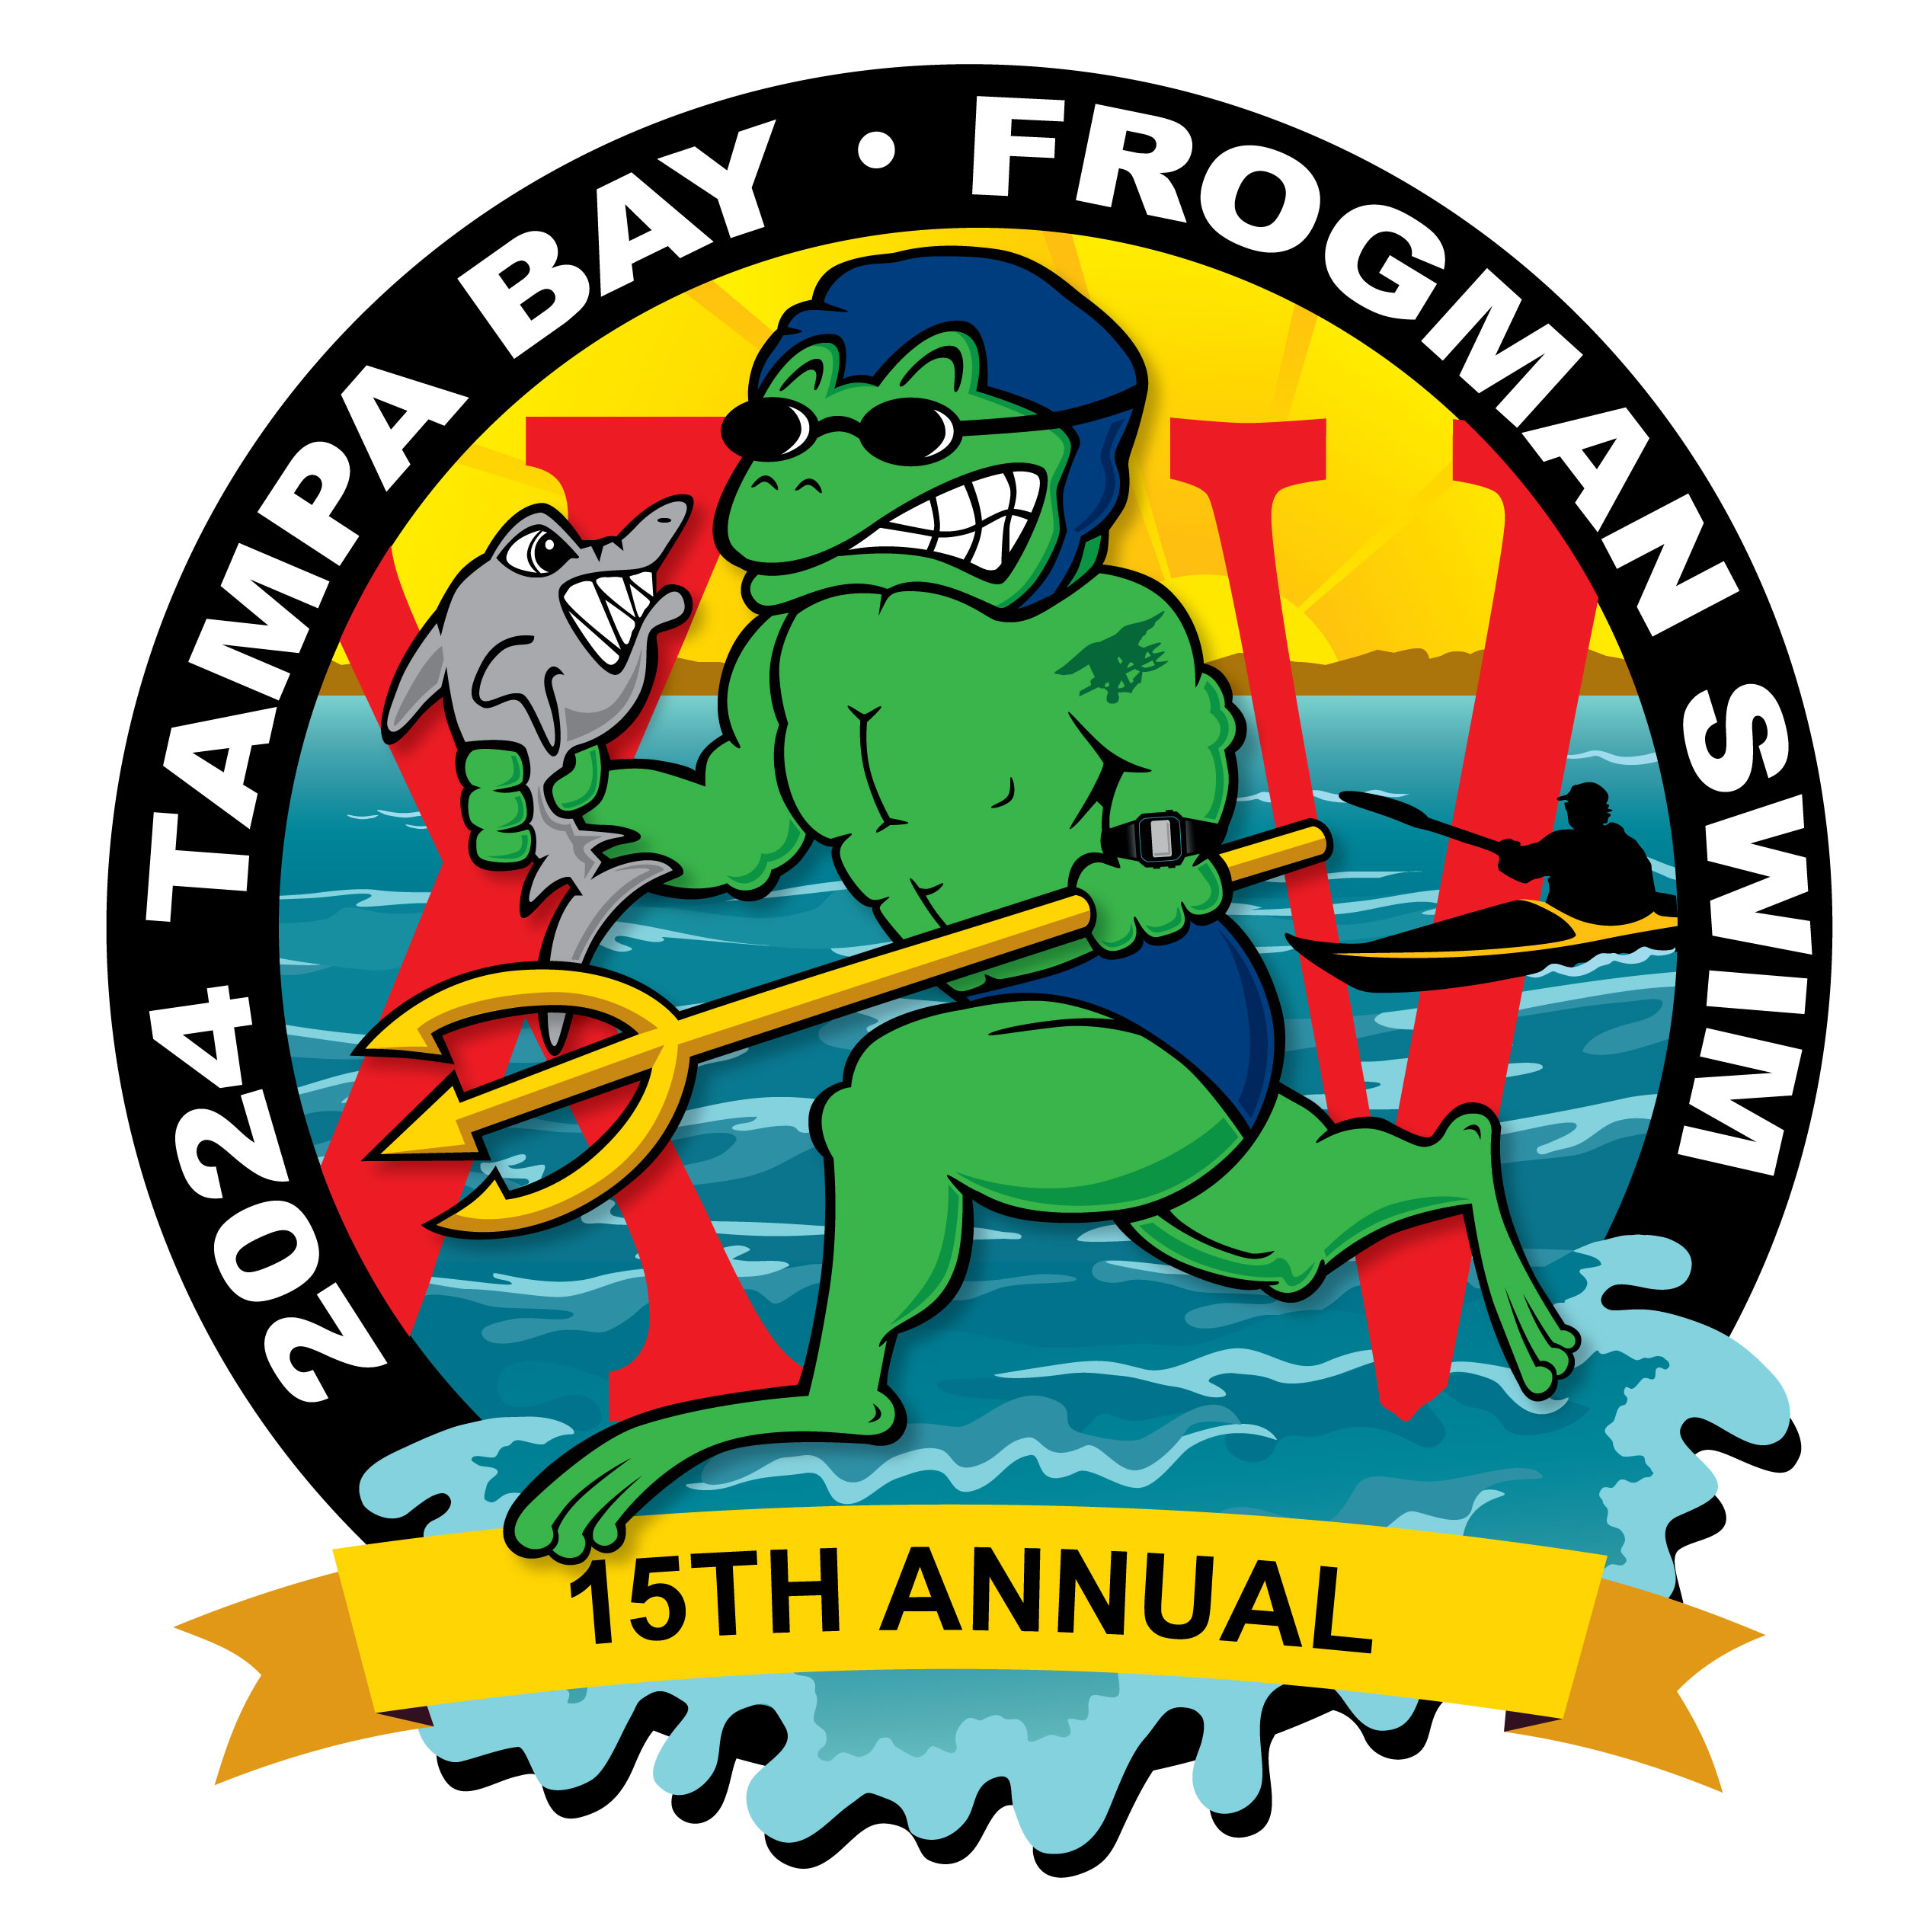 Tampa Bay Frogman Swim